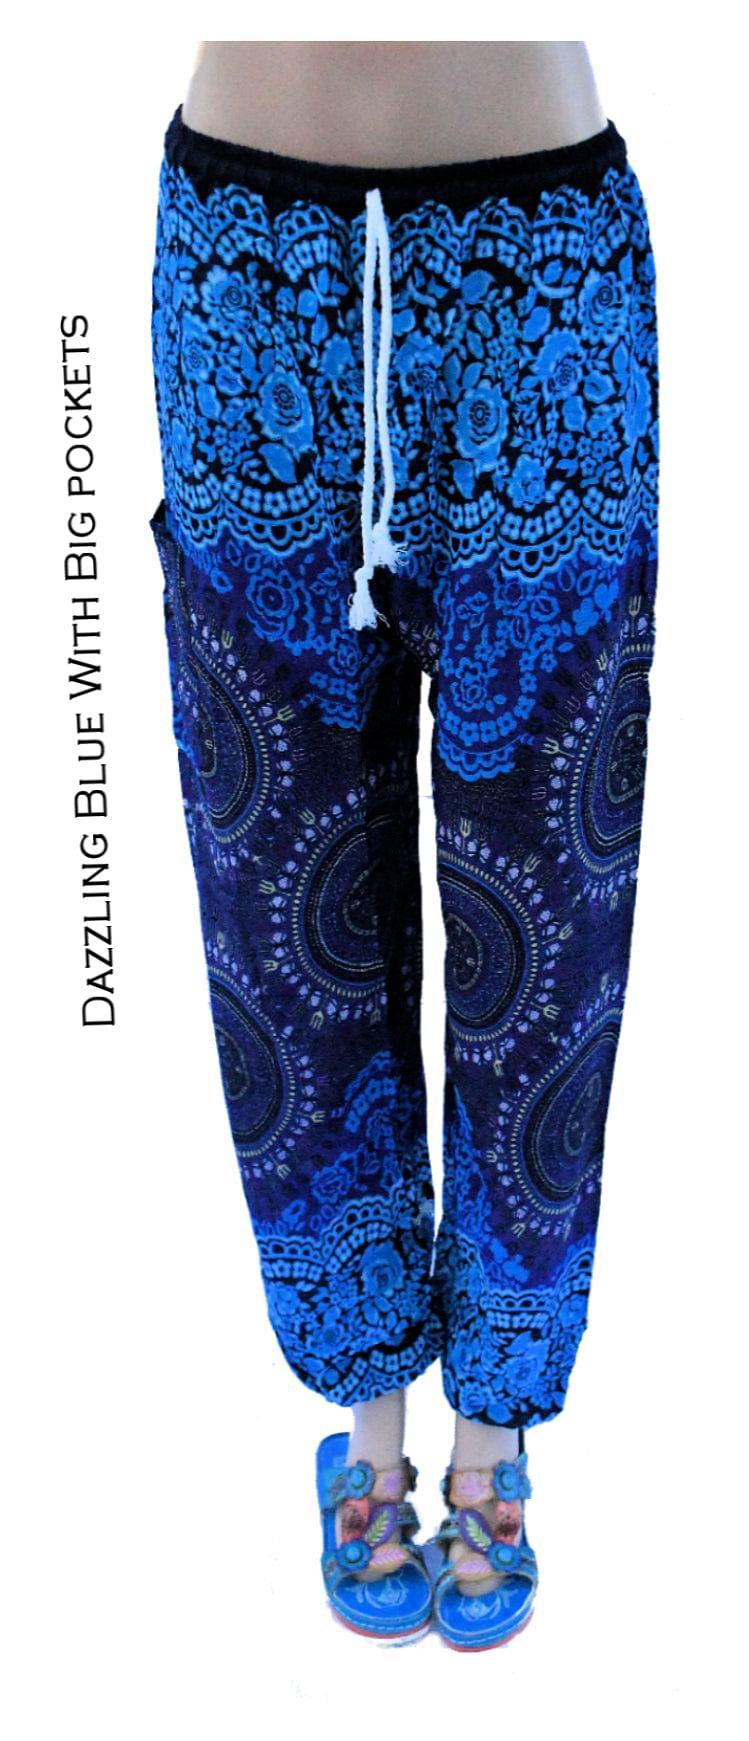 Harem Pants For Women. Harem Pant With Pattern & Big Pocket– Blue, Green, Pink, Red –Elastic Waist M